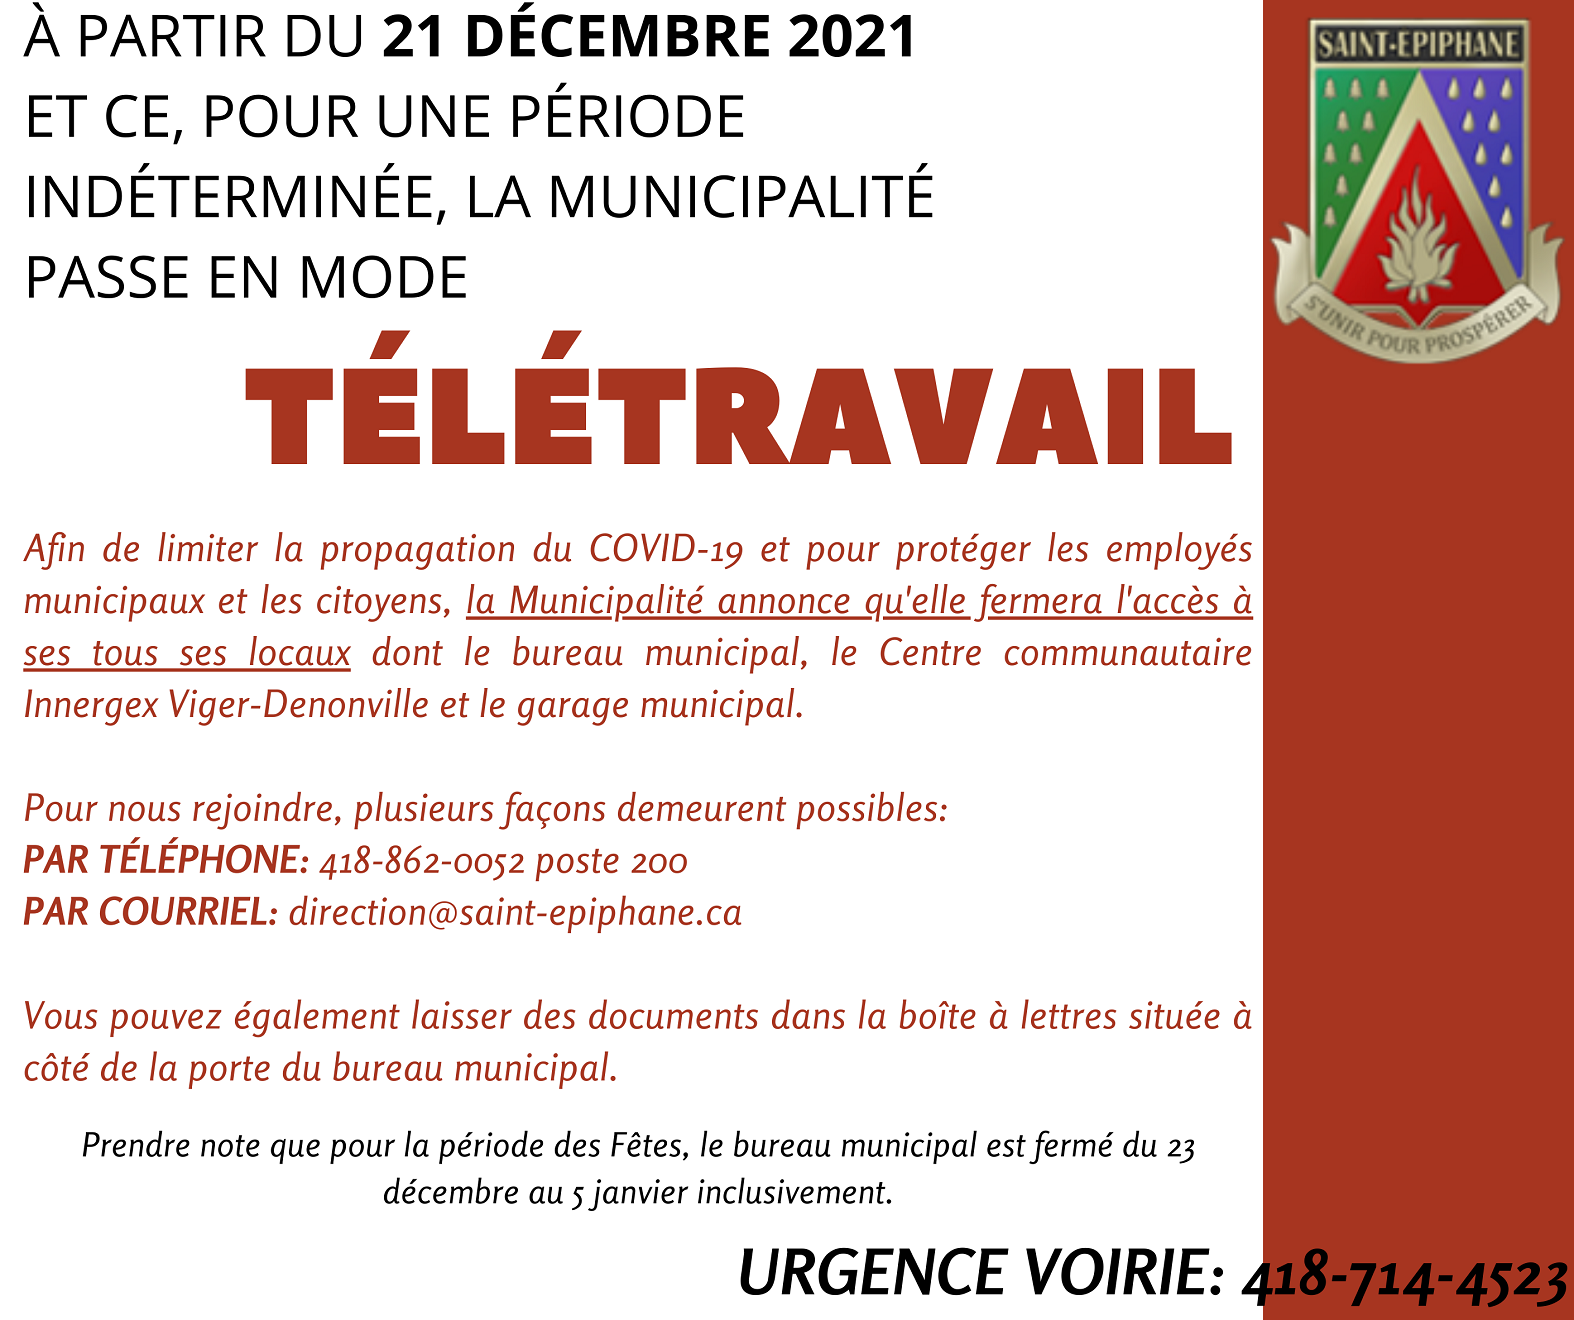 Avis public - La Municipalité passe en mode télétravail à compter du 21 décembre 2021 (Photo : © Direction générale )